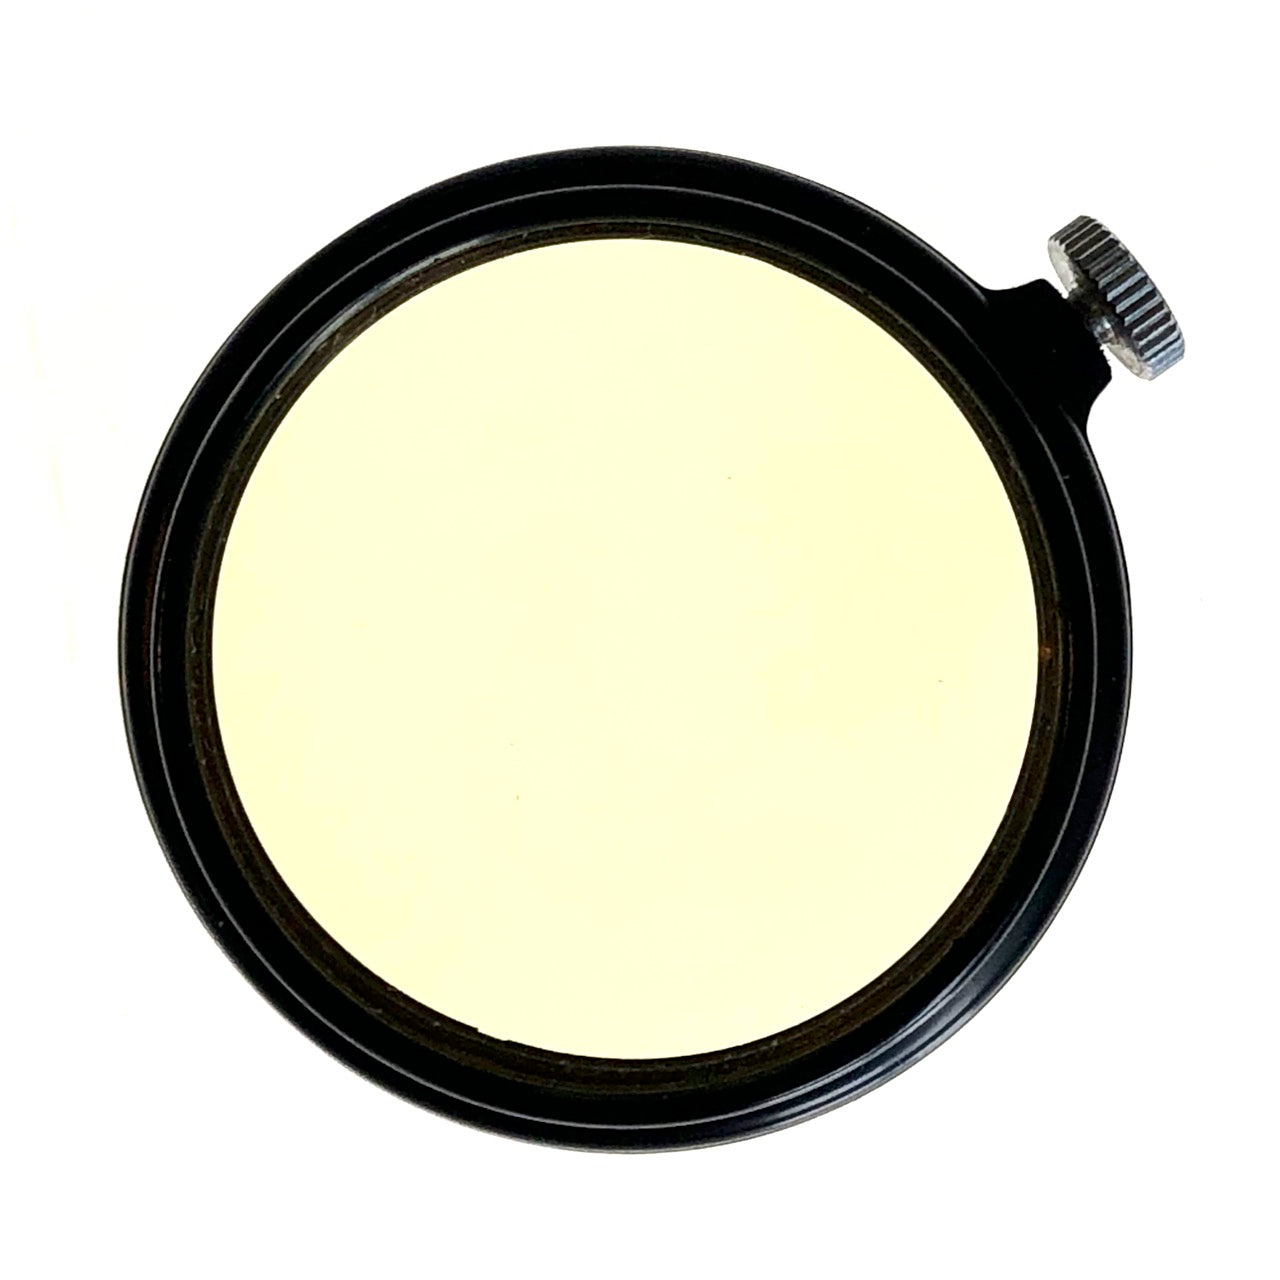 Leitz A36 0 (UV) filter